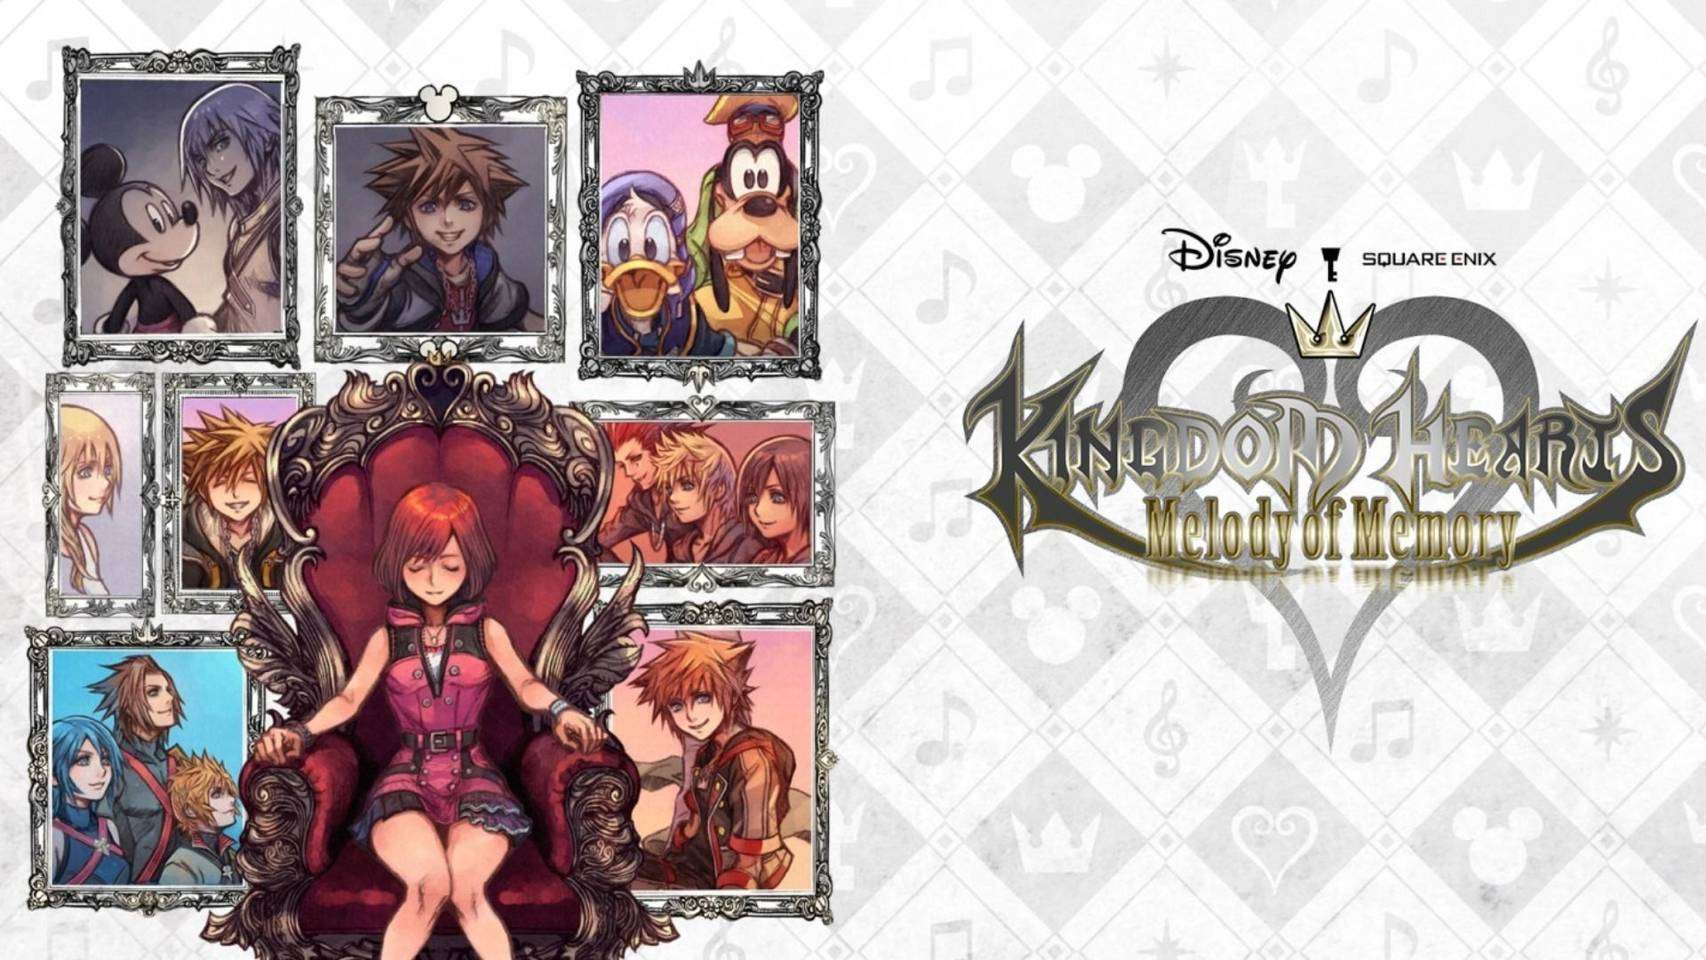 Kingdom Hearts Melody